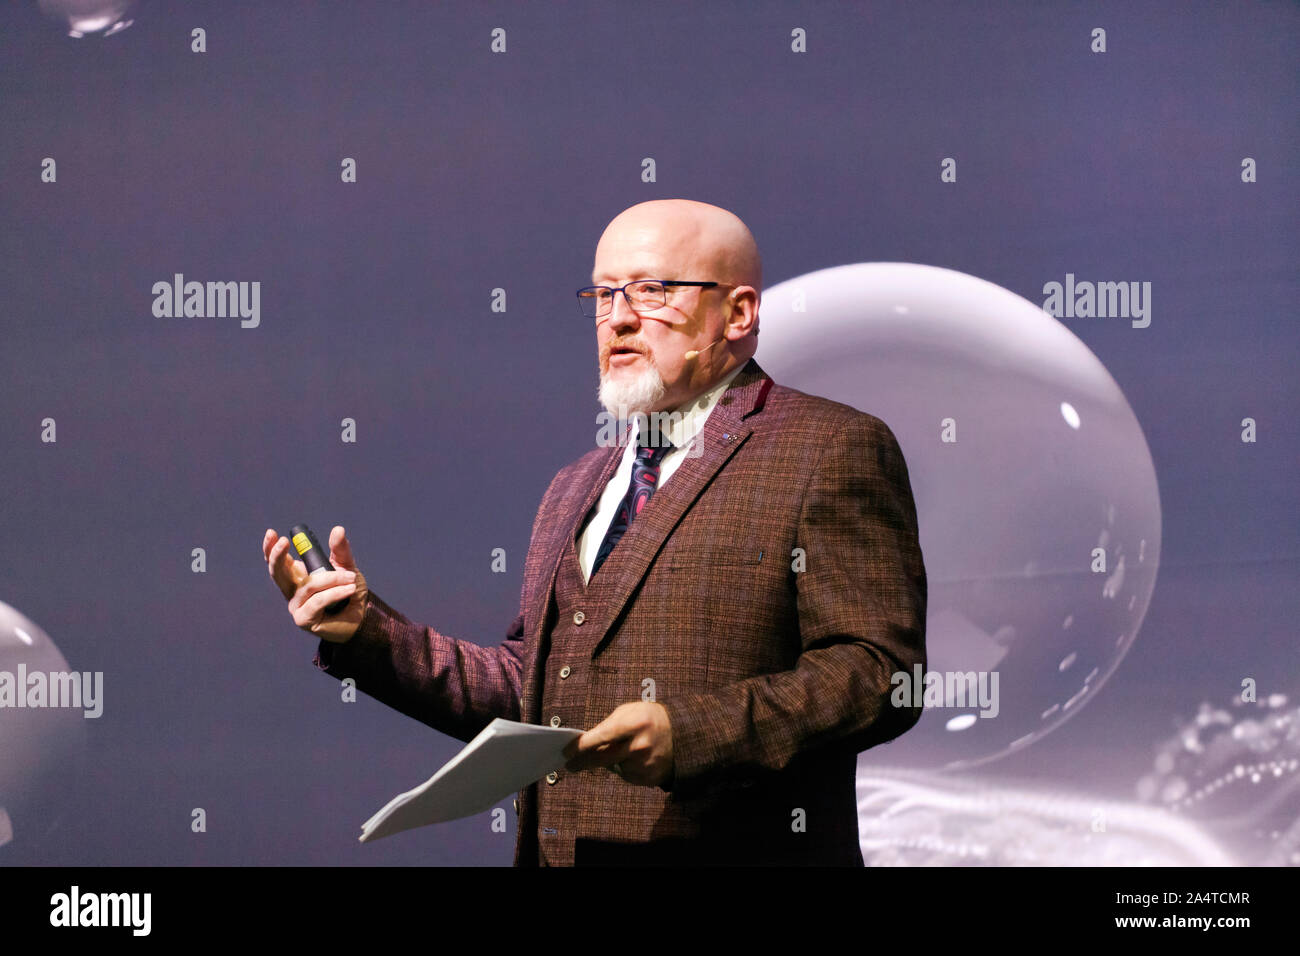 Ralph Dinsley, fondateur et directeur exécutif, le nord de l'espace et de la sécurité sa, parle de 'Comment nettoyer l'espace Junk', sur le Cosmos, au New Scientist Live 2019 Banque D'Images